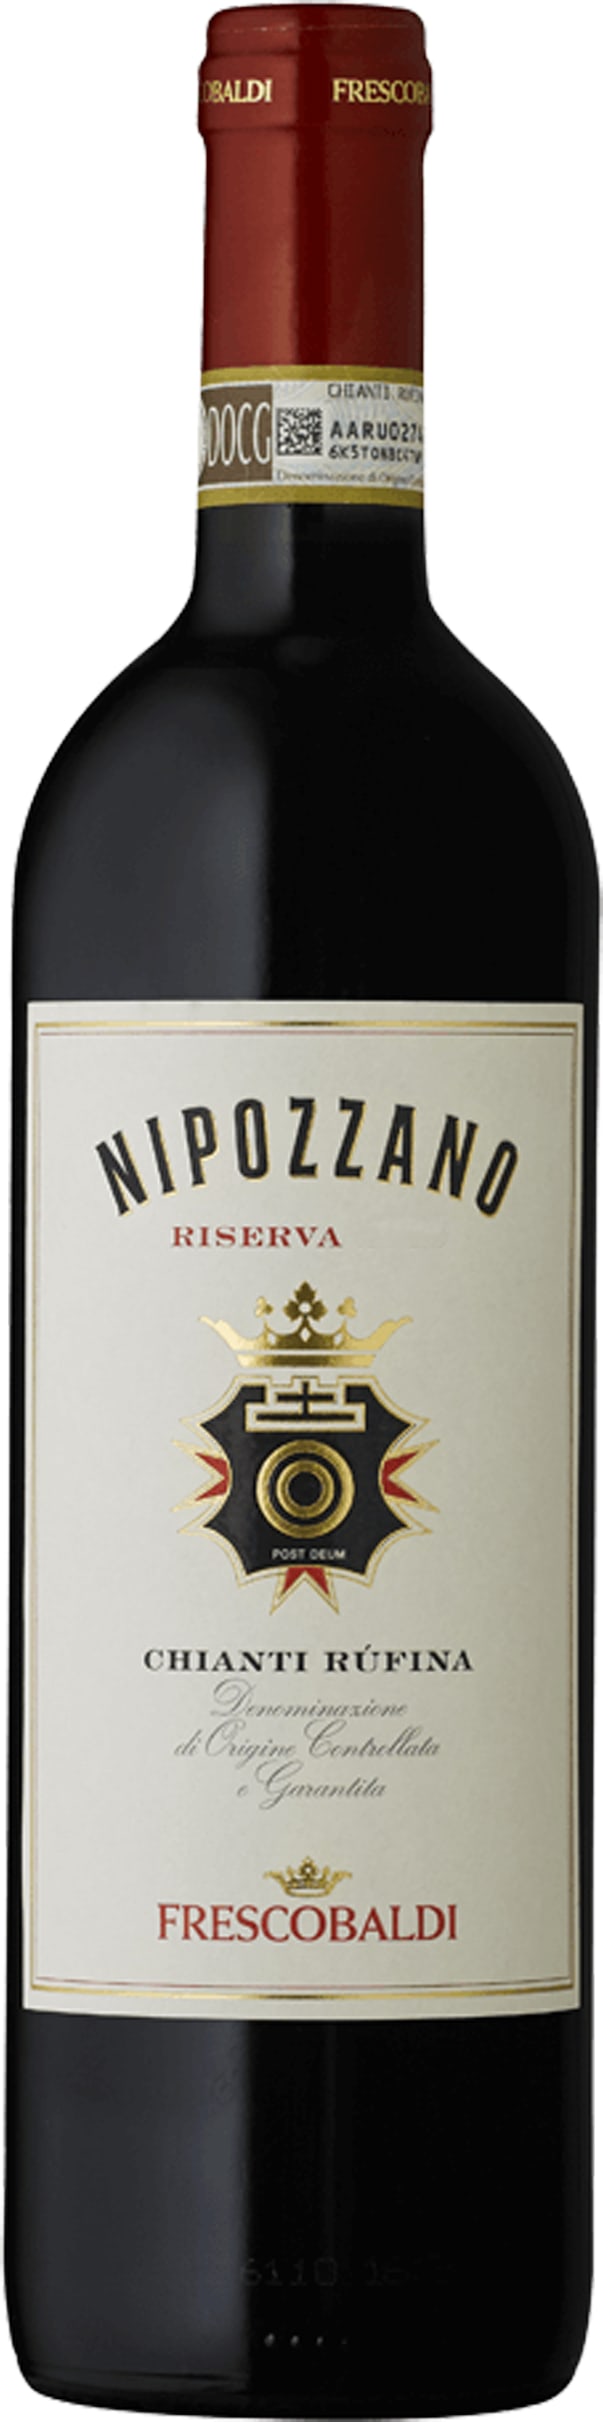 Frescobaldi Nipozzano Chianti Rufina Riserva 2020 75cl - Buy Frescobaldi Wines from GREAT WINES DIRECT wine shop